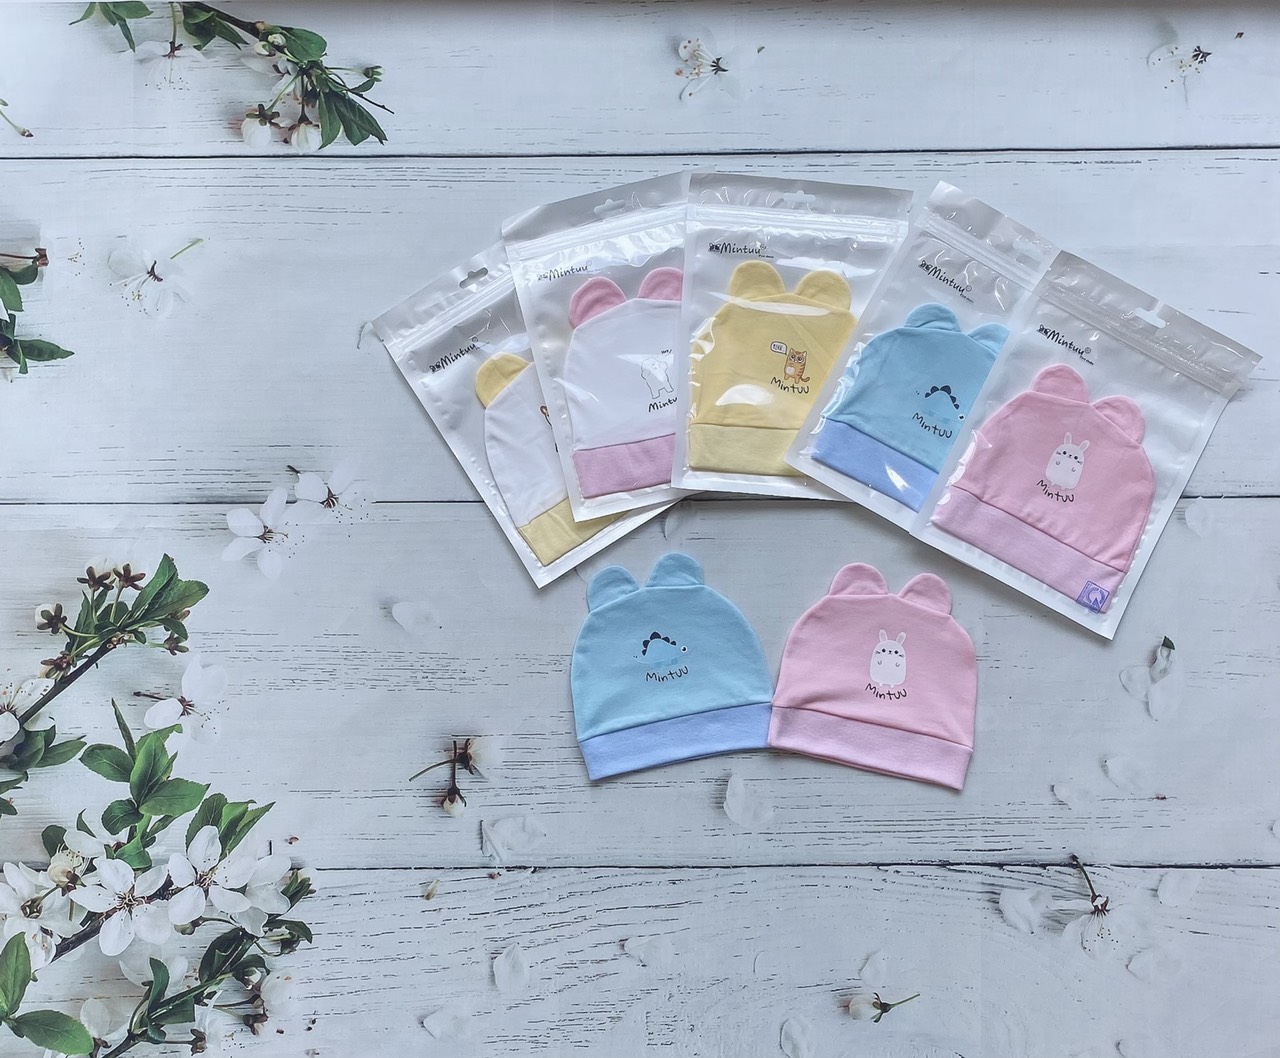 Mũ sơ sinh tai thỏ chất liệu vải 100% cotton 4 chiều thương hiệu MINTUU FIRST CHOICE - Thời trang và đồ dùng cho trẻ em - Hana’s kids